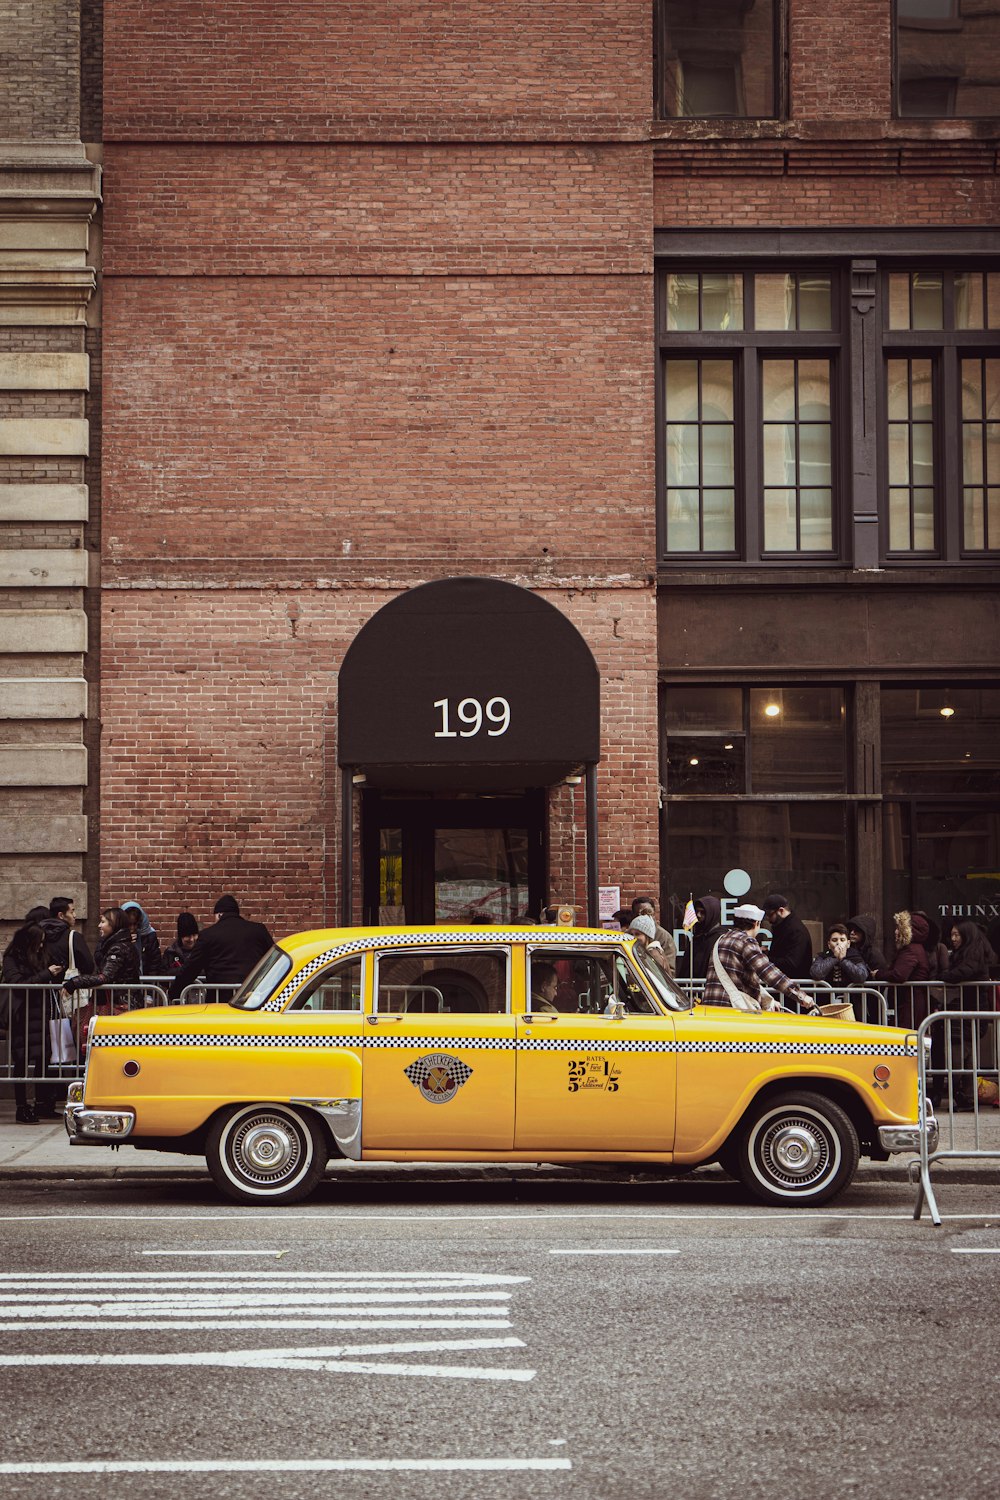 갈색 벽돌 건물 옆에 주차된 노란색 택시